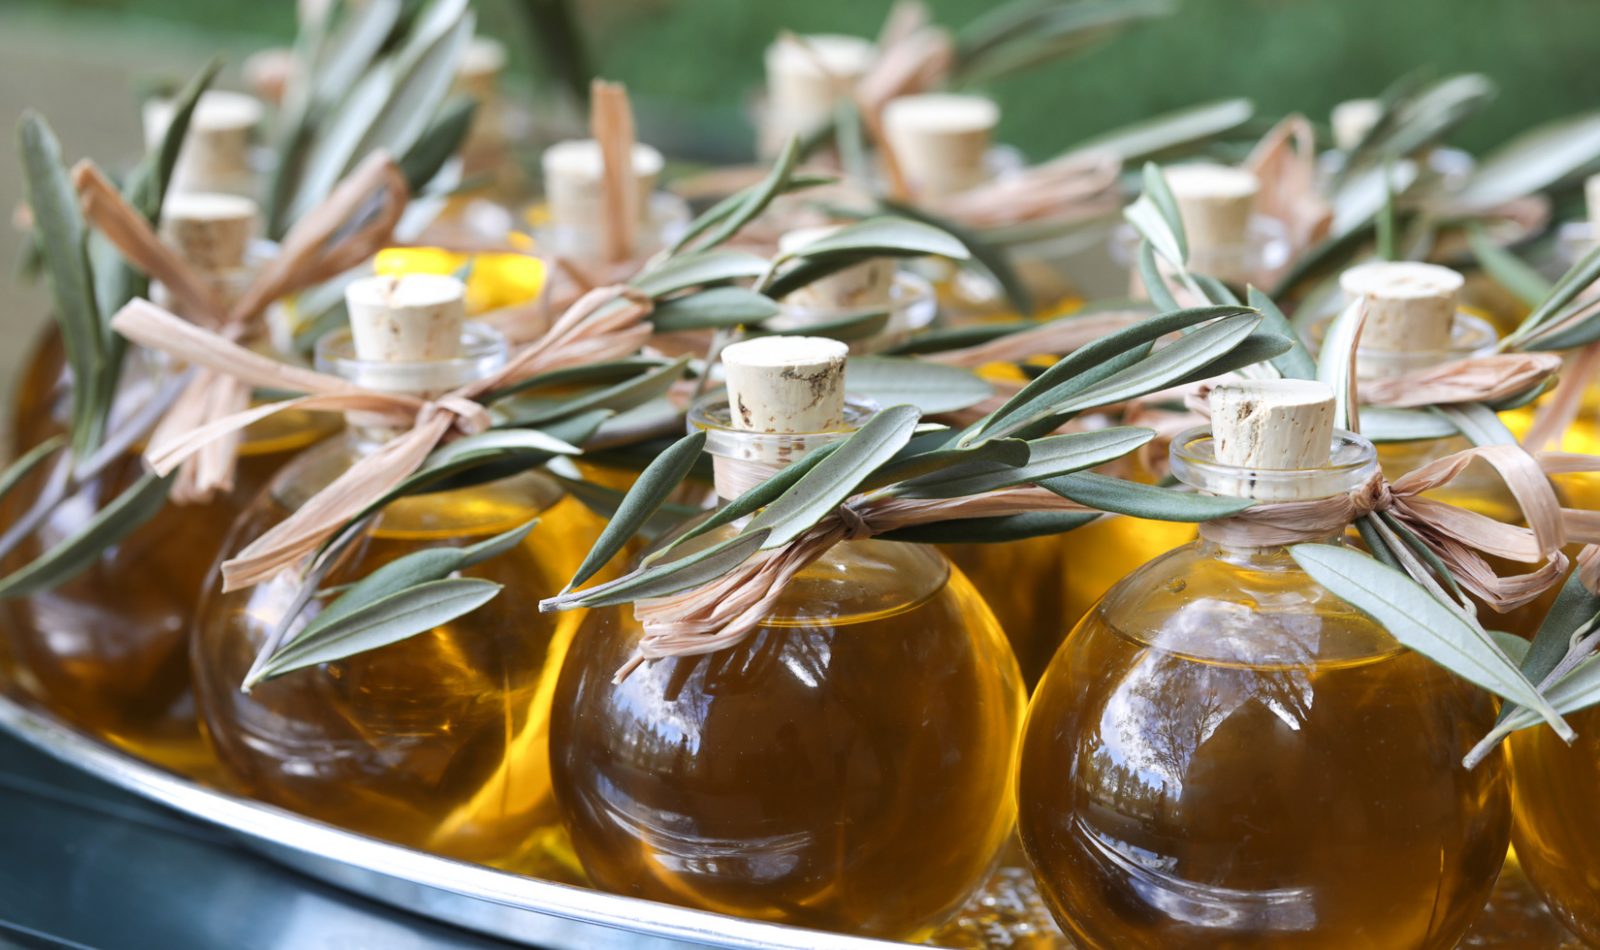 Jordan Winery extra virgin olive oil in glass bottles with olive leaf sprig garnish